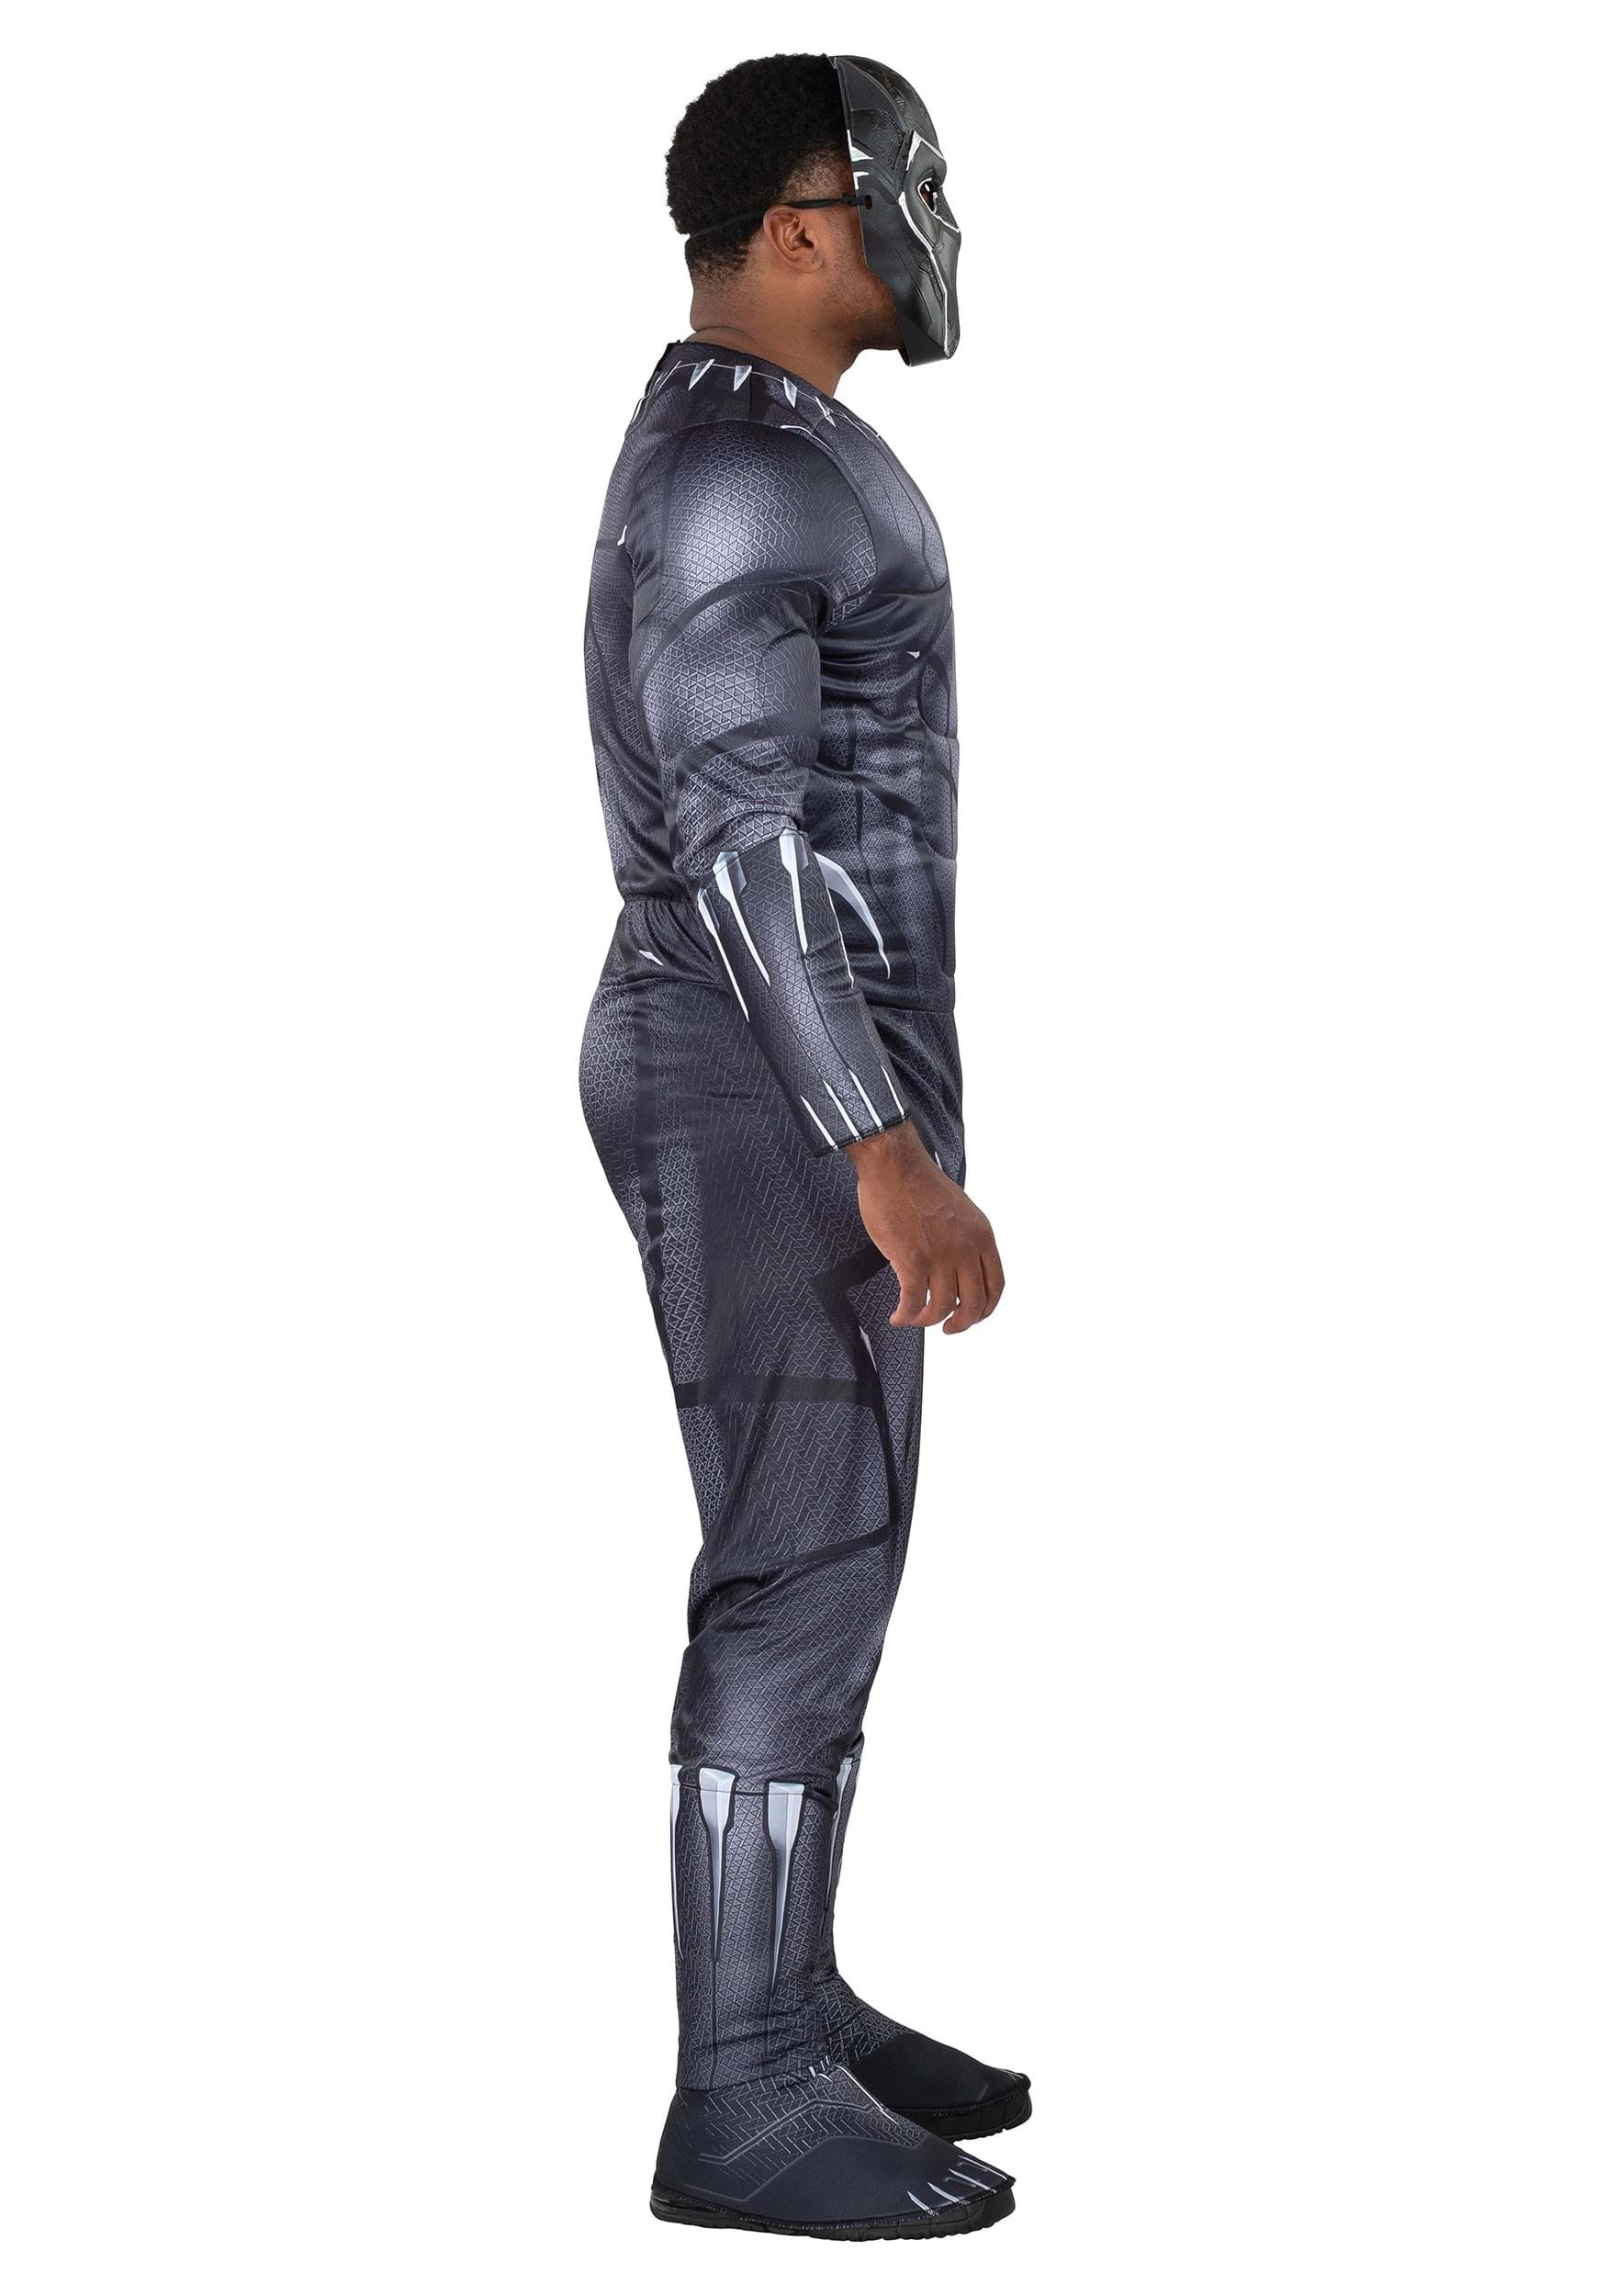 Costume Qualux de Black Panther de Marvel pour adultes